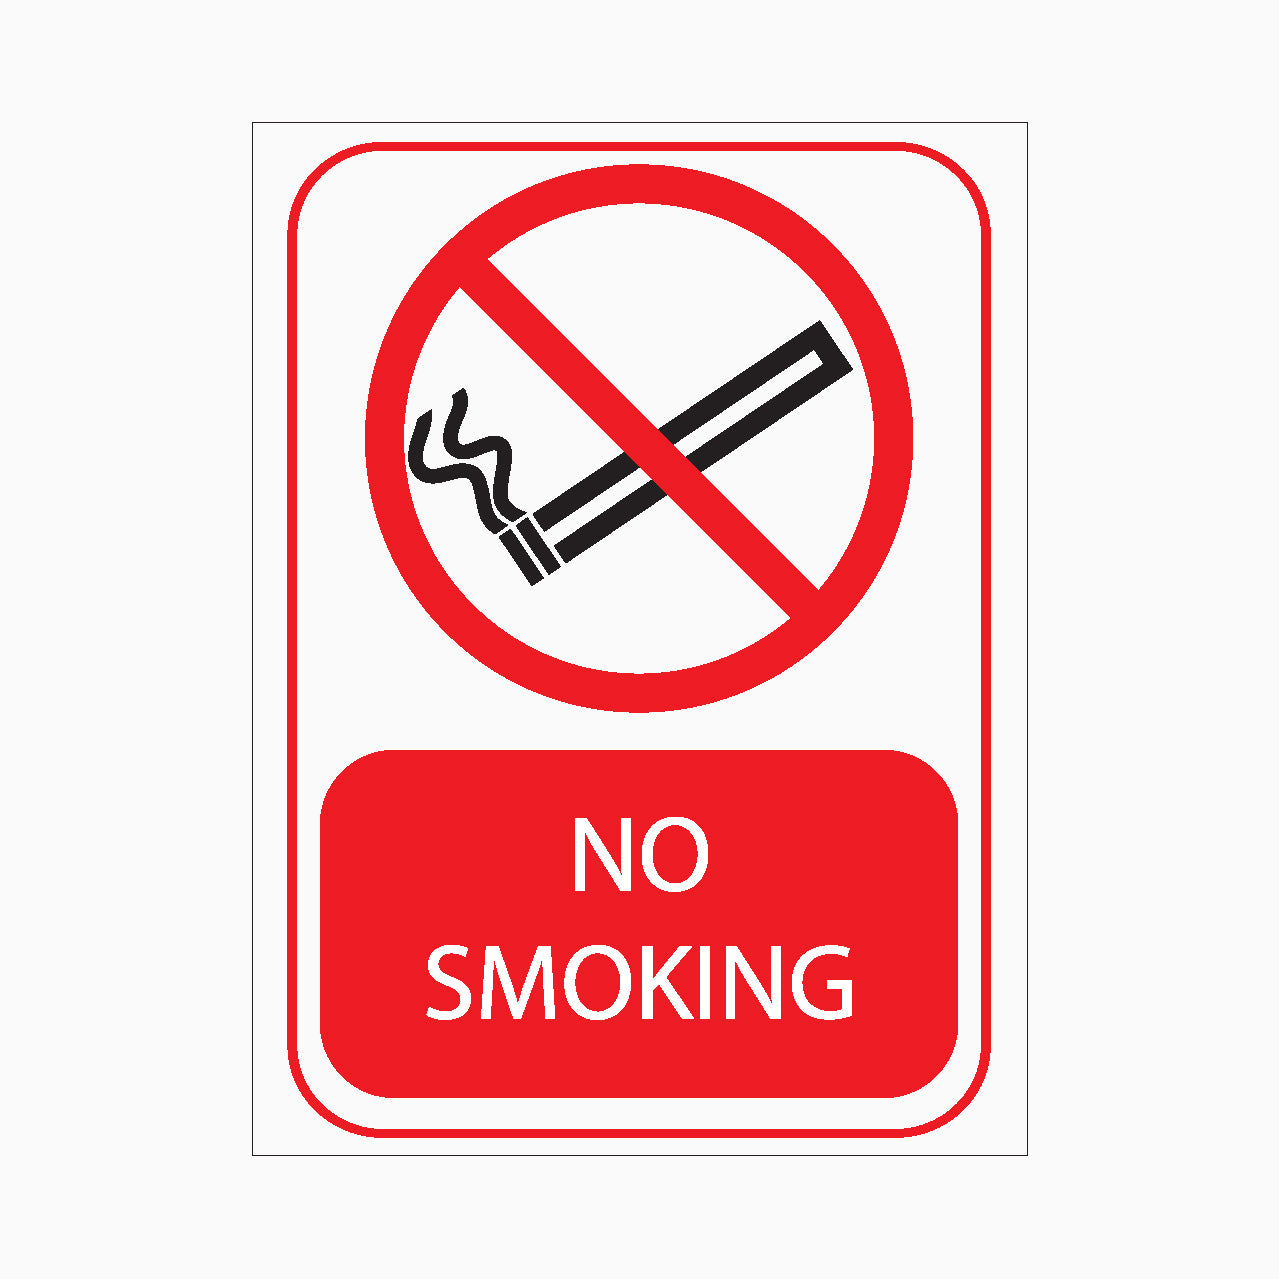 NO SMOKING SIGN - GET SIGNS